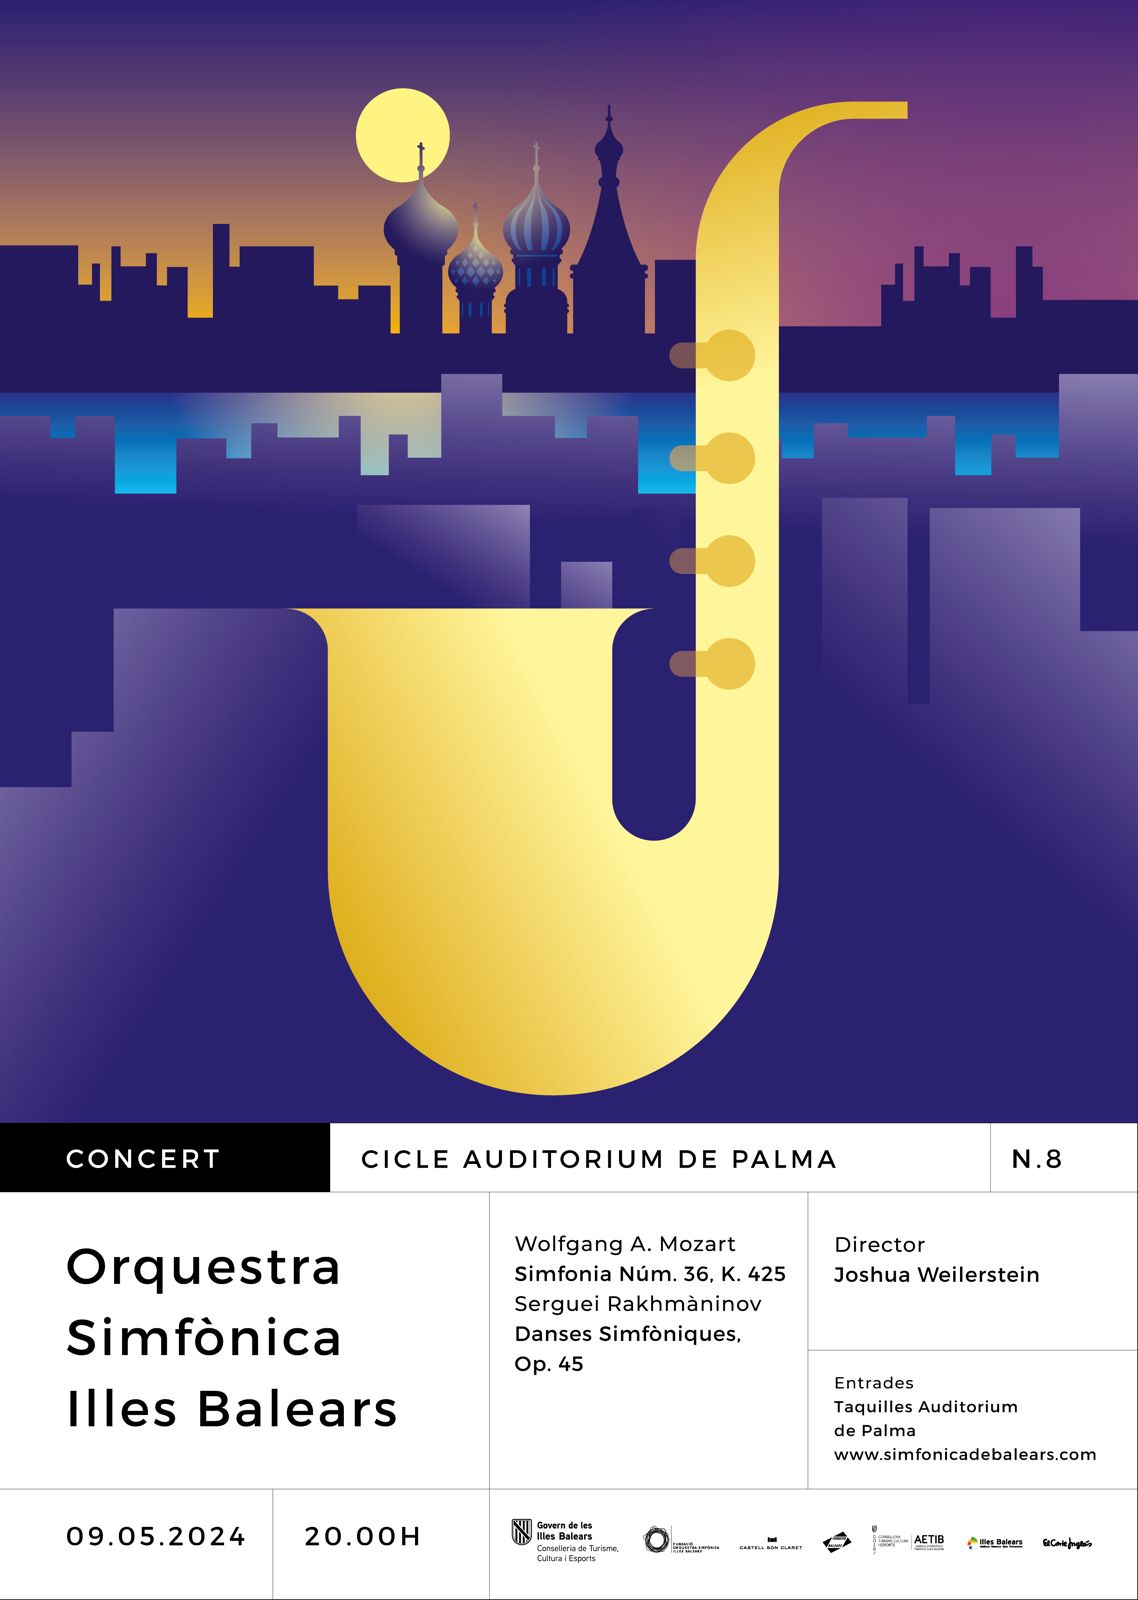 Concert nº8 del Cicle Auditorium de Palma